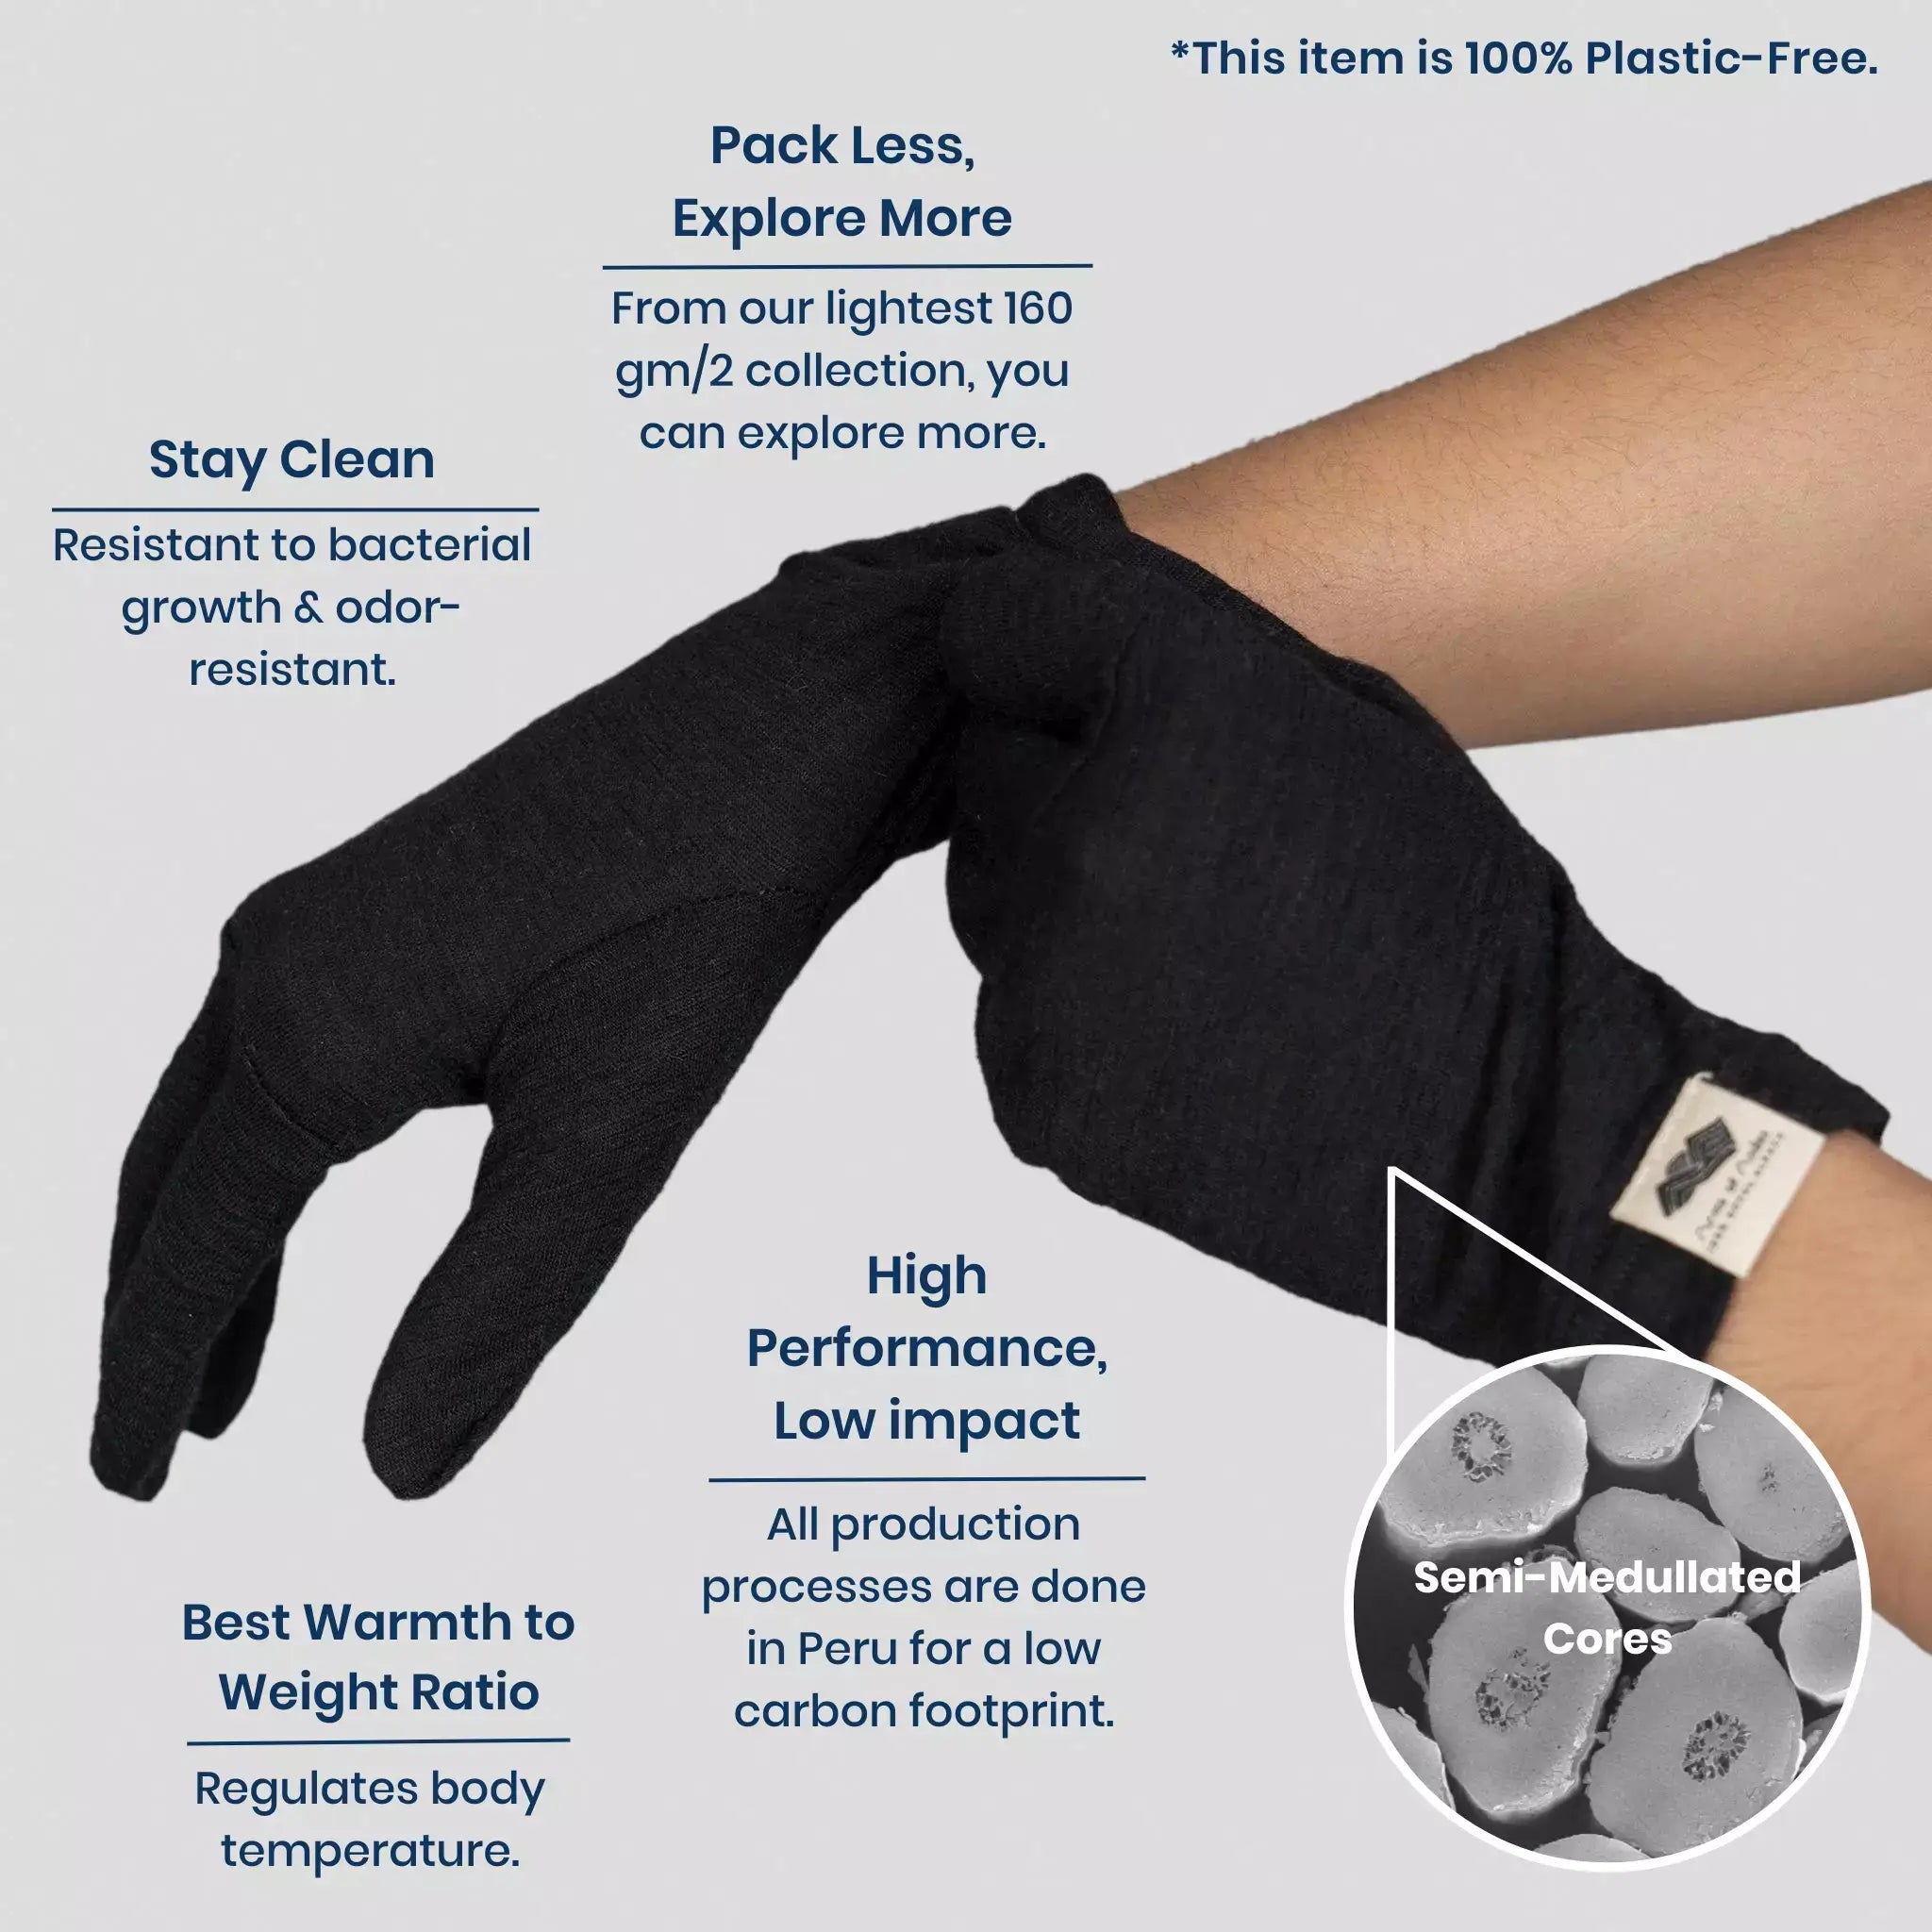 UV Shield Nail Glove - 100% Cotton